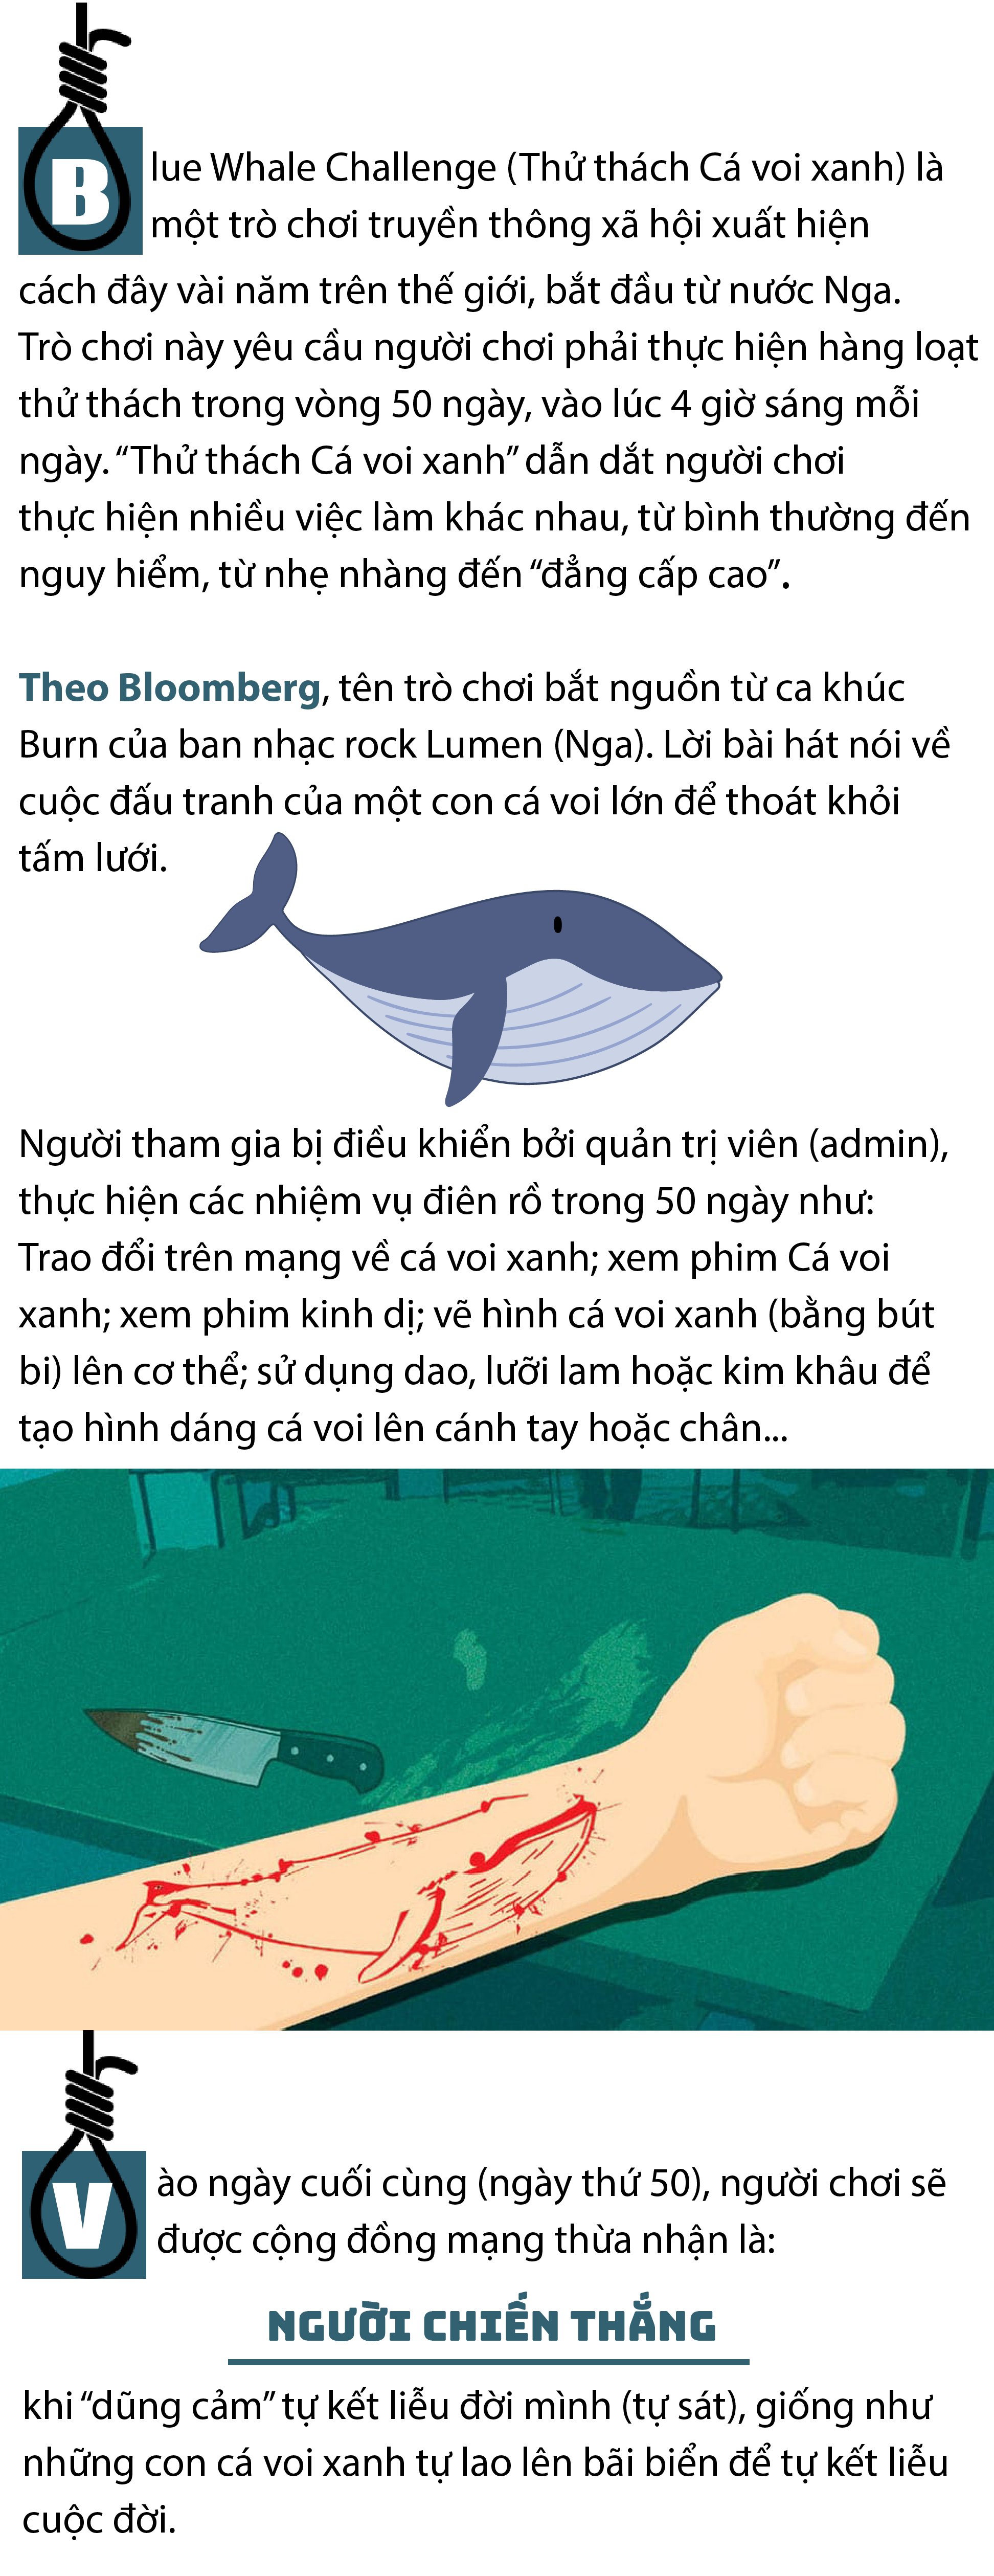 Thử thách cá voi xanh là một hoạt động thú vị, mang tính giáo dục cao cho trẻ em. Để khám phá thêm về con vật khổng lồ này, hãy xem hình ảnh liên quan đến thử thách cá voi xanh và cùng nhau học hỏi về thế giới động vật đầy bất ngờ.